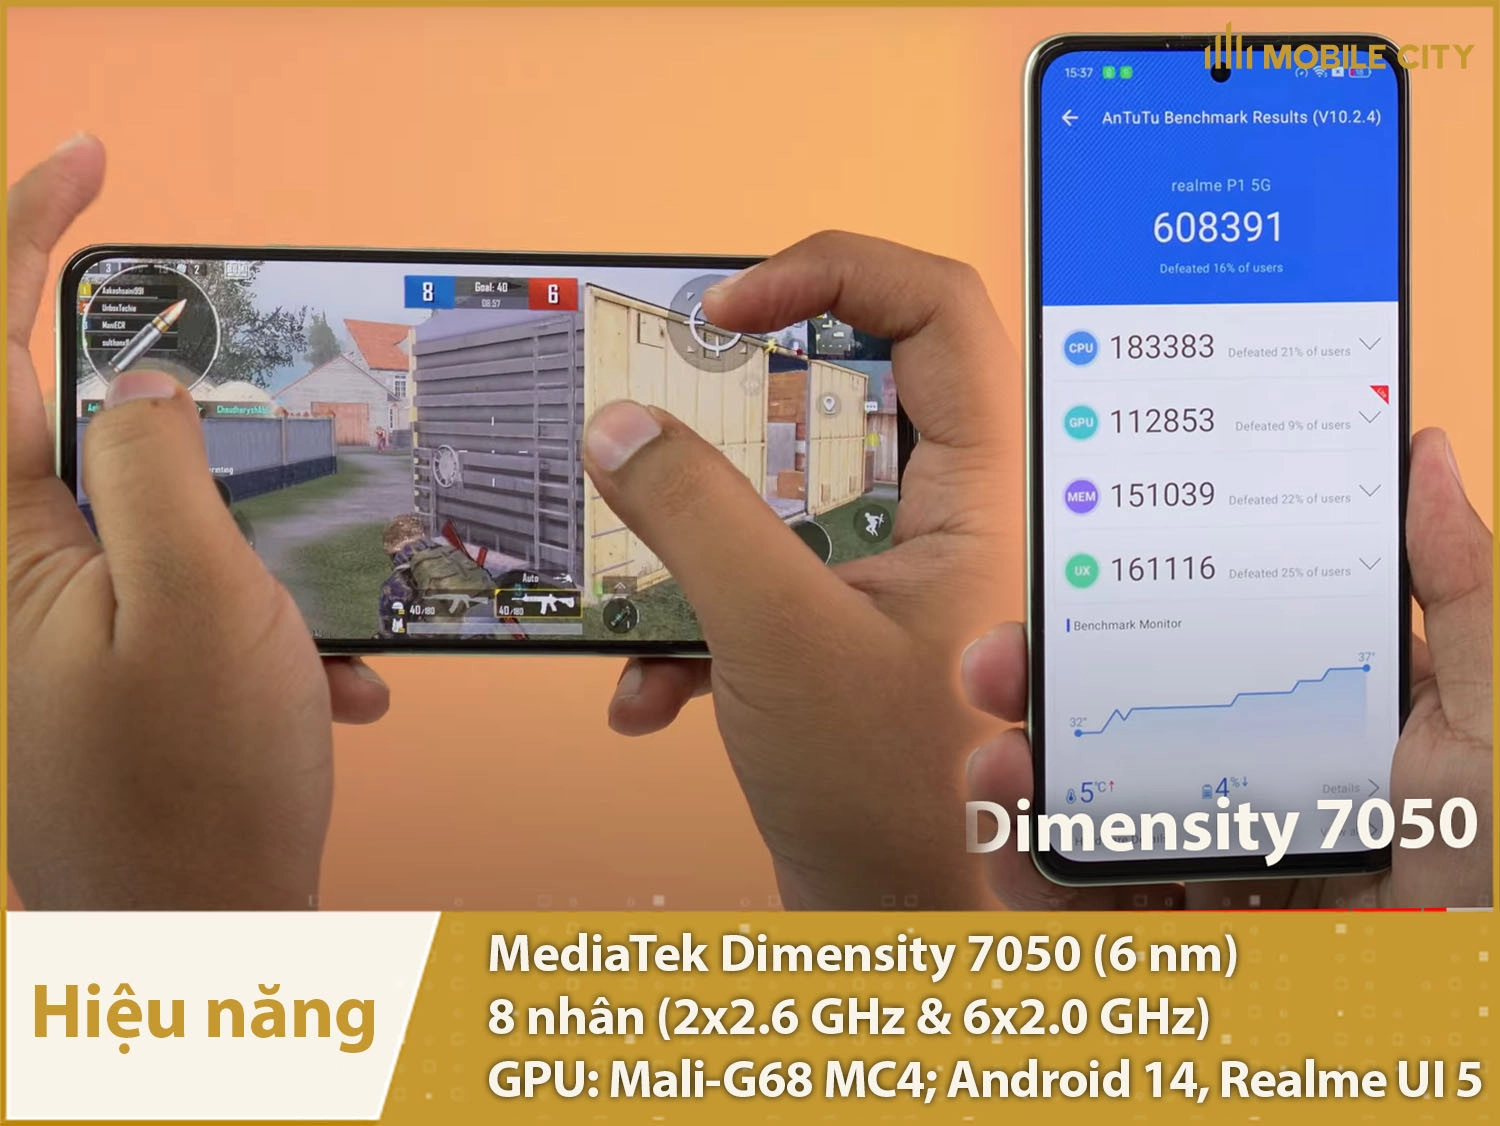 Hiệu năng mạnh mẽ từ chip Dimensity 7050, phần mềm Realme UI 5 cập nhật lâu dài